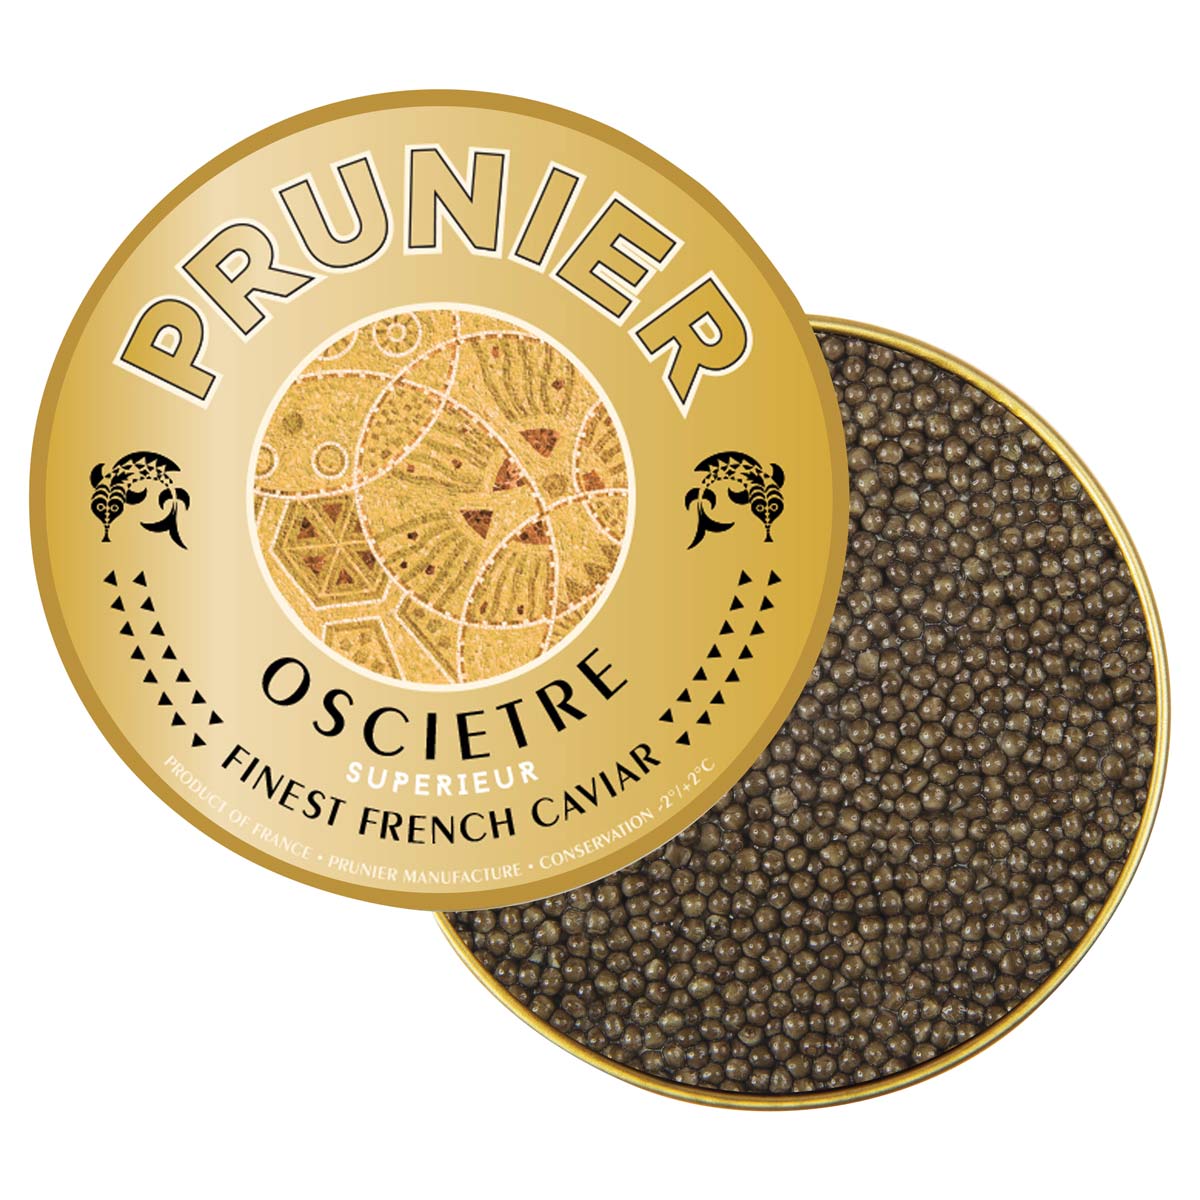 Prunier Oscietre Superieur, Prunier Caviar, Caviar